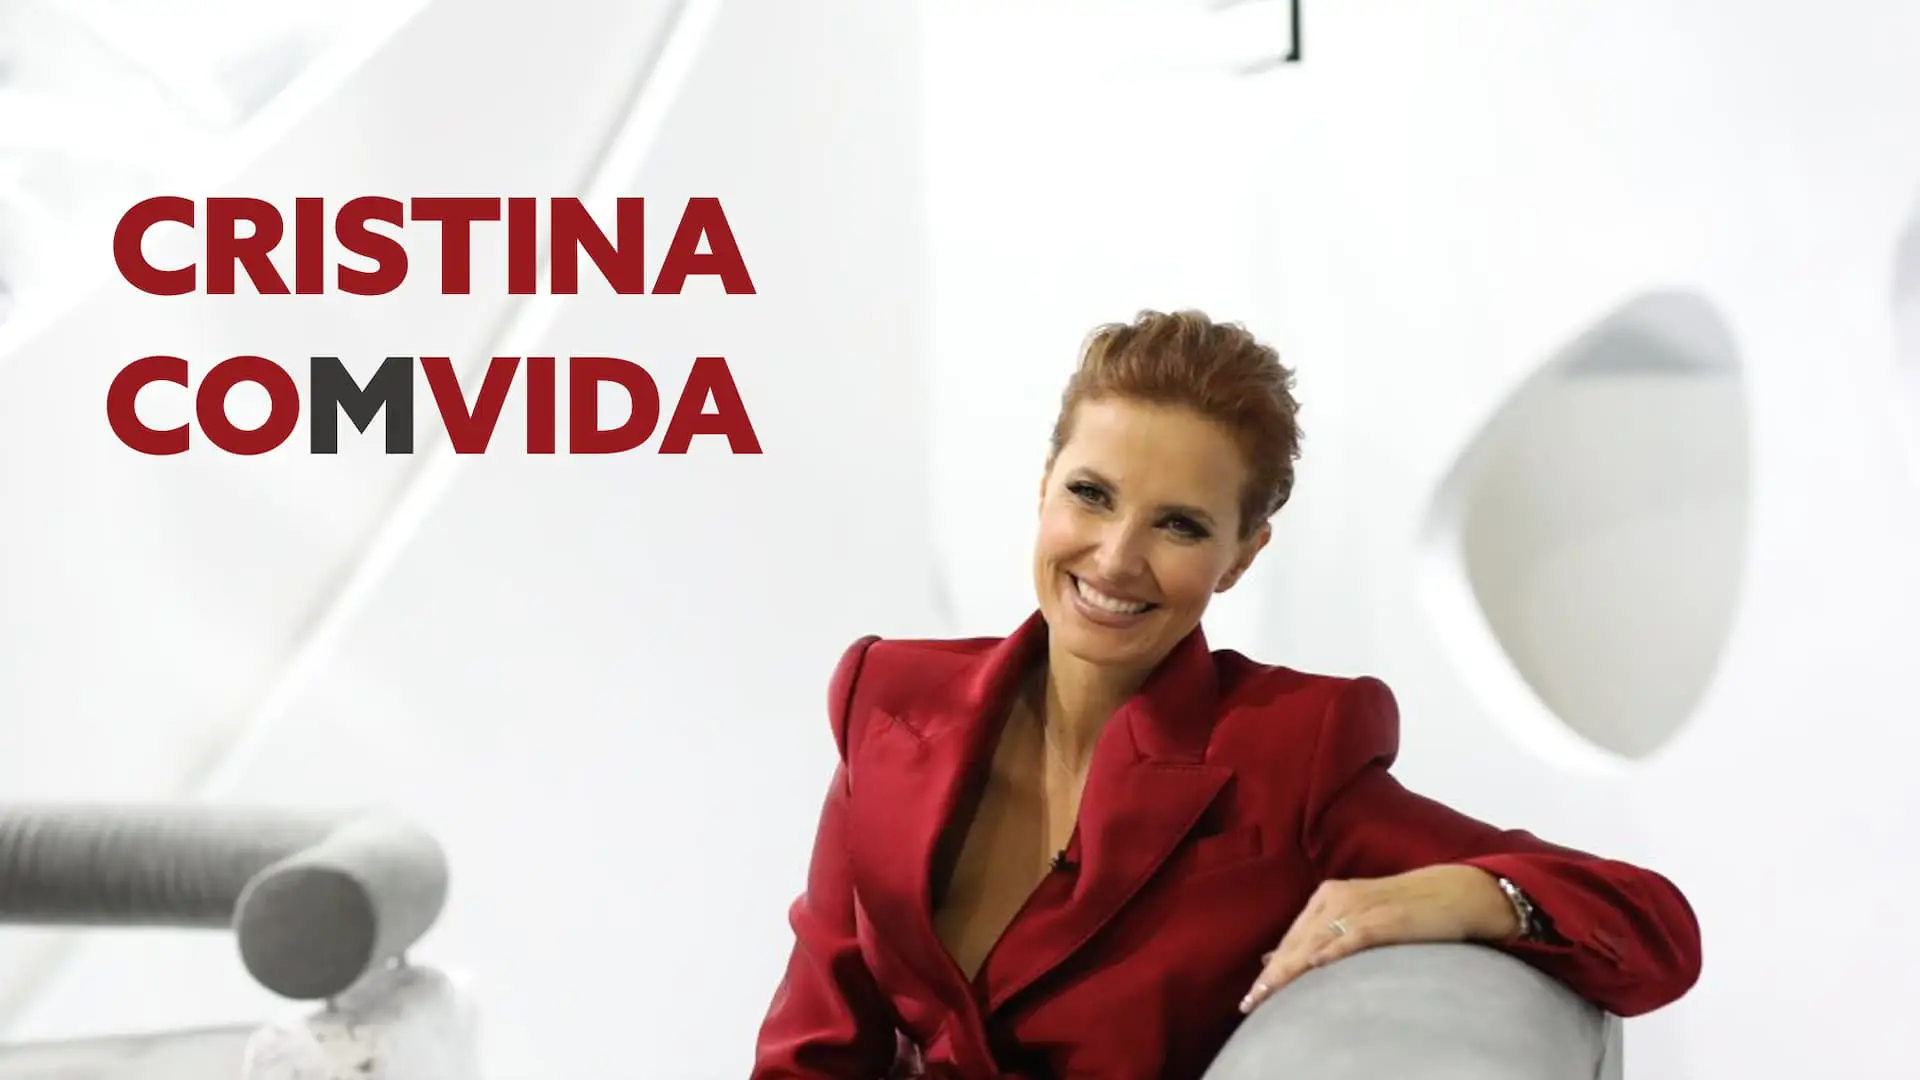 Cristina Comvida Tvi Cristina Ferreira